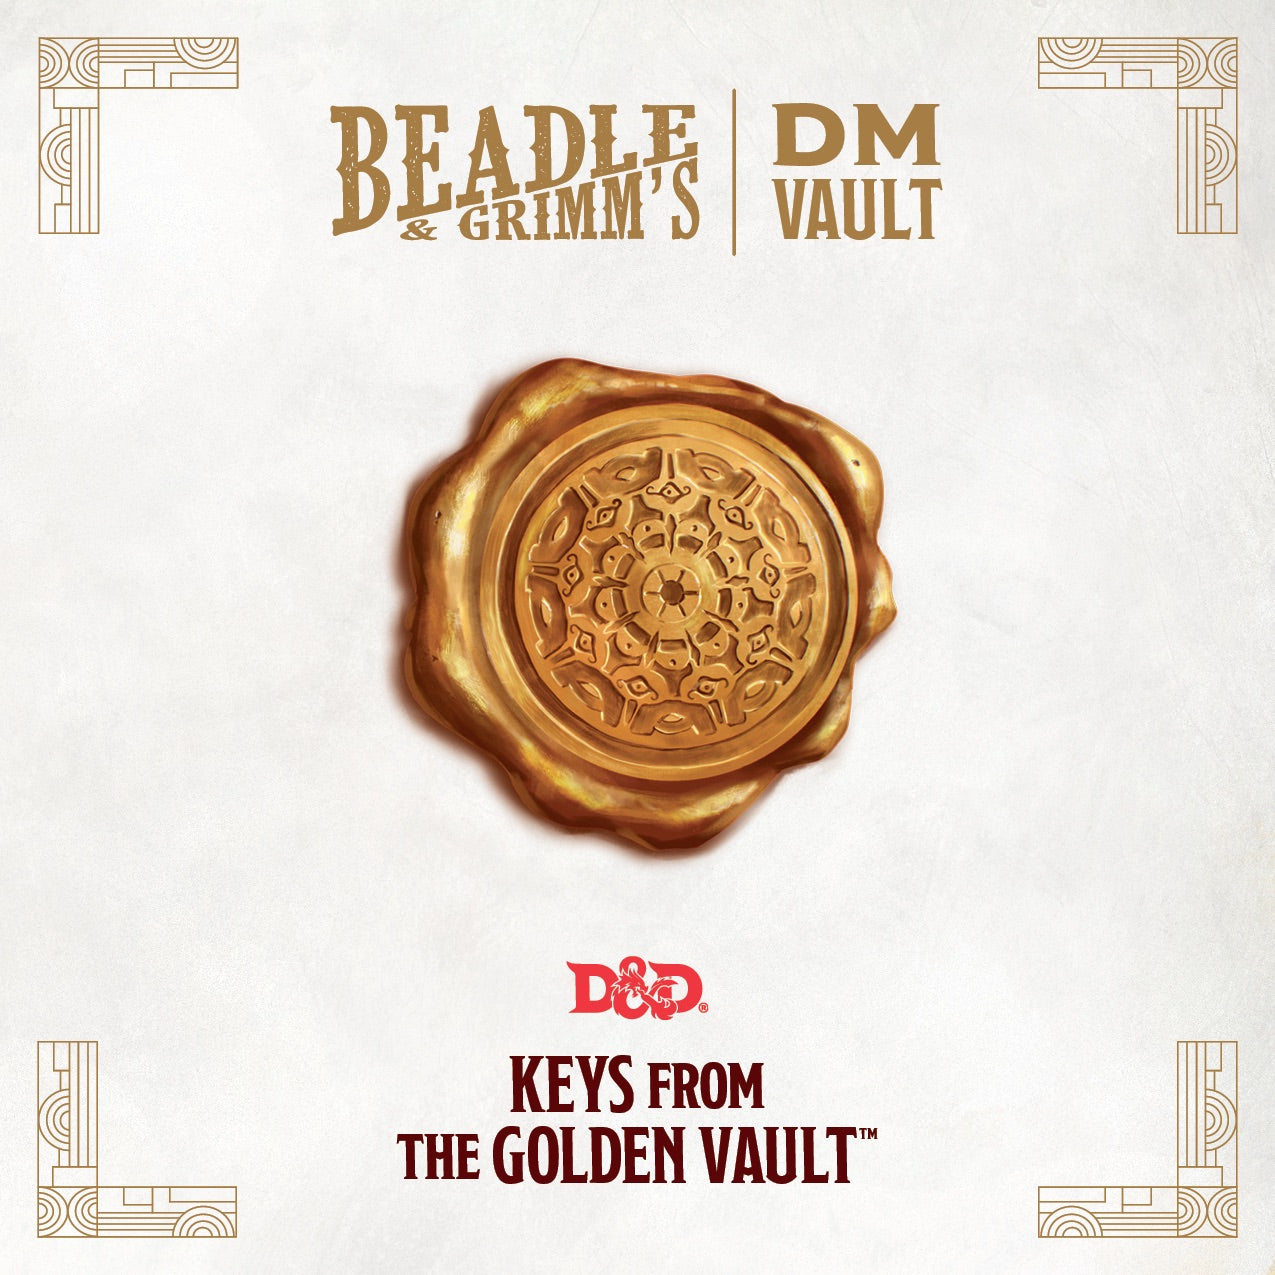 DM Vault for Keys from the Golden Vault